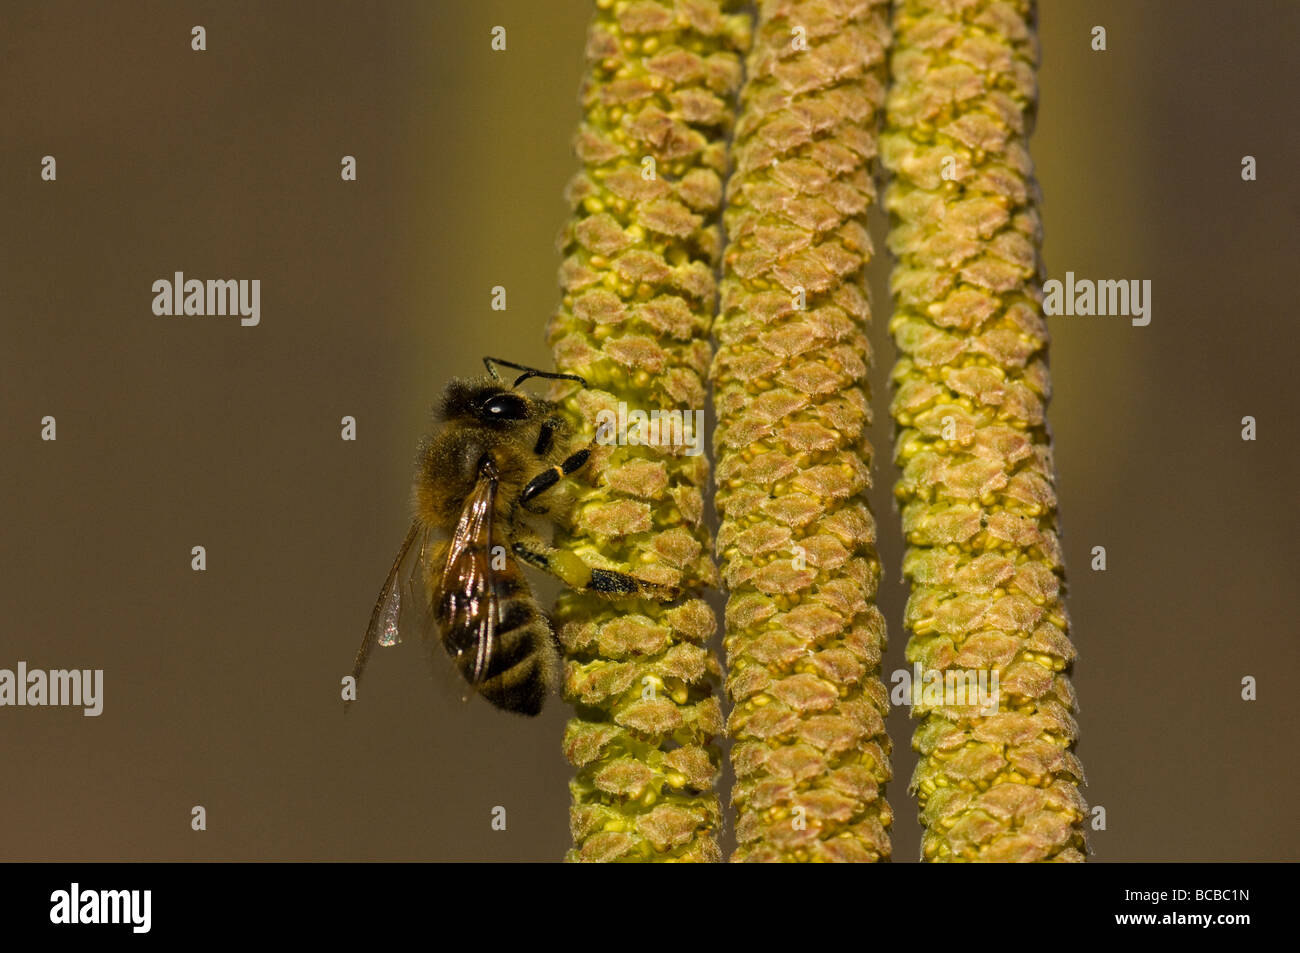 ape bee Apis mellifica nocciolo Coriolus avellana insetti insect impollinazione impollination Stock Photo